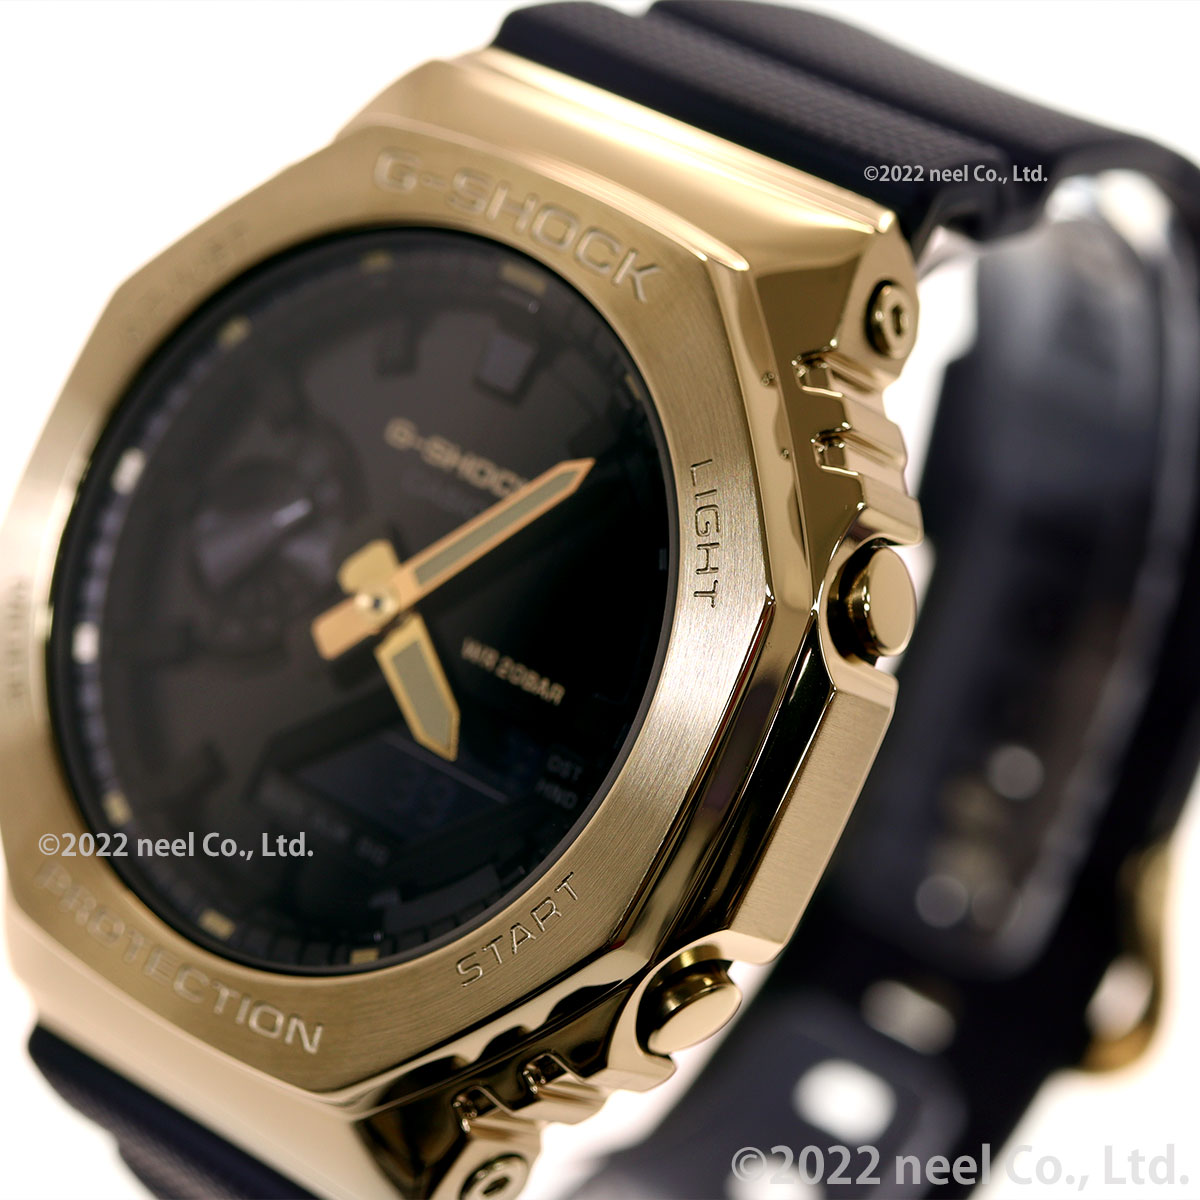 Gショック G-SHOCK デジタル 腕時計 メンズ GM-2100G-1A9JF メタル 